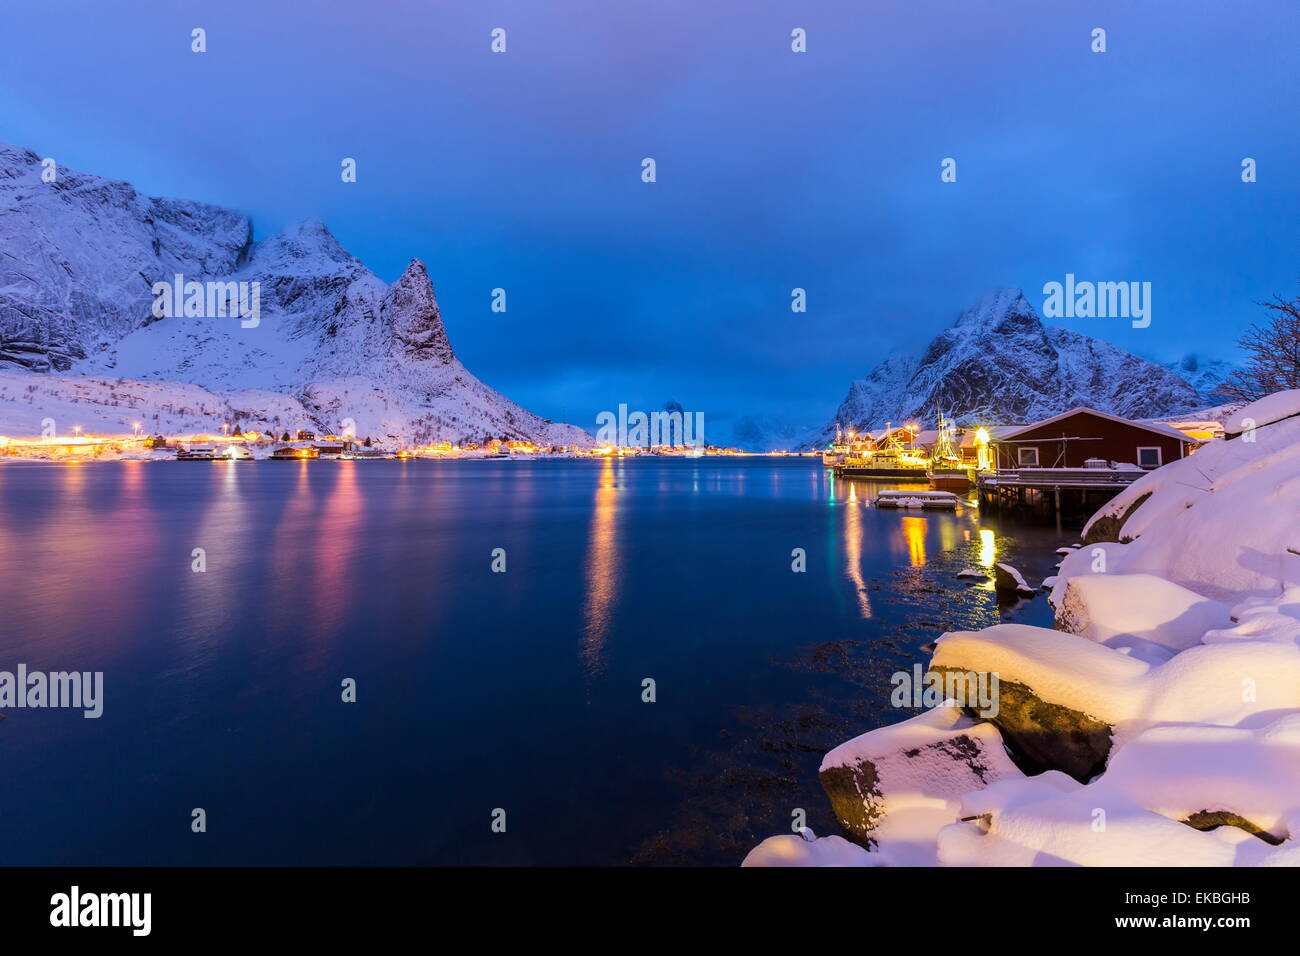 Blaue Stunde in der kleinen Bucht von Reine, Lofoten Inseln, Norwegen Stockfoto